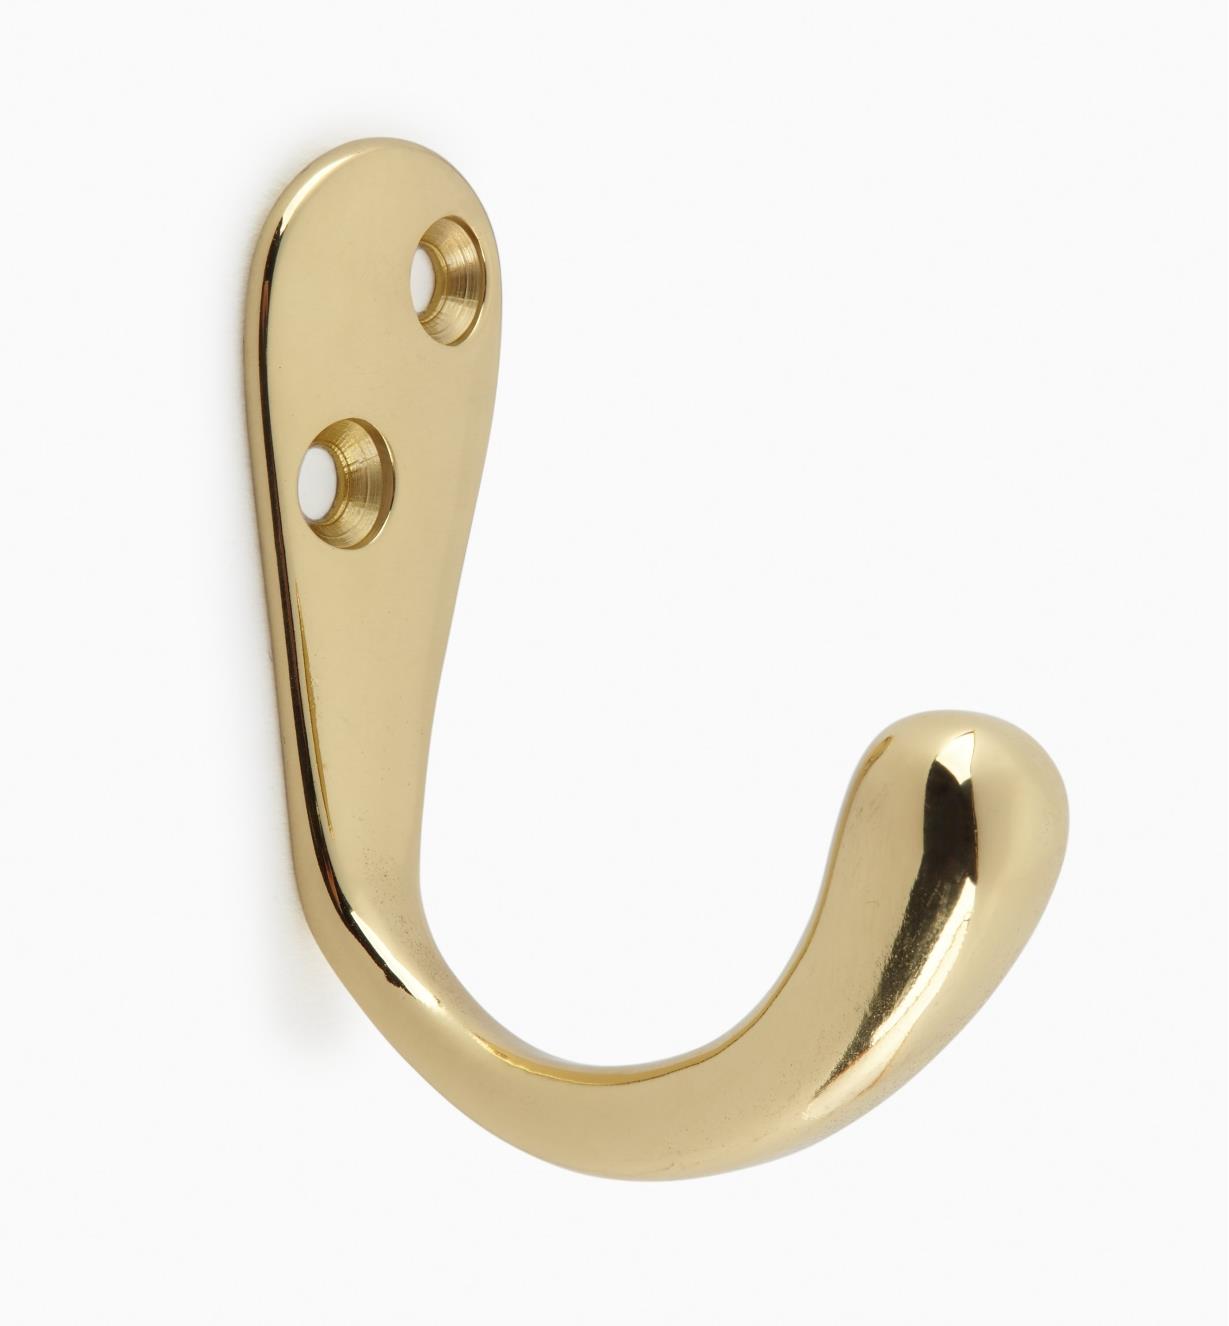 00W8504 - Polished Brass Hook